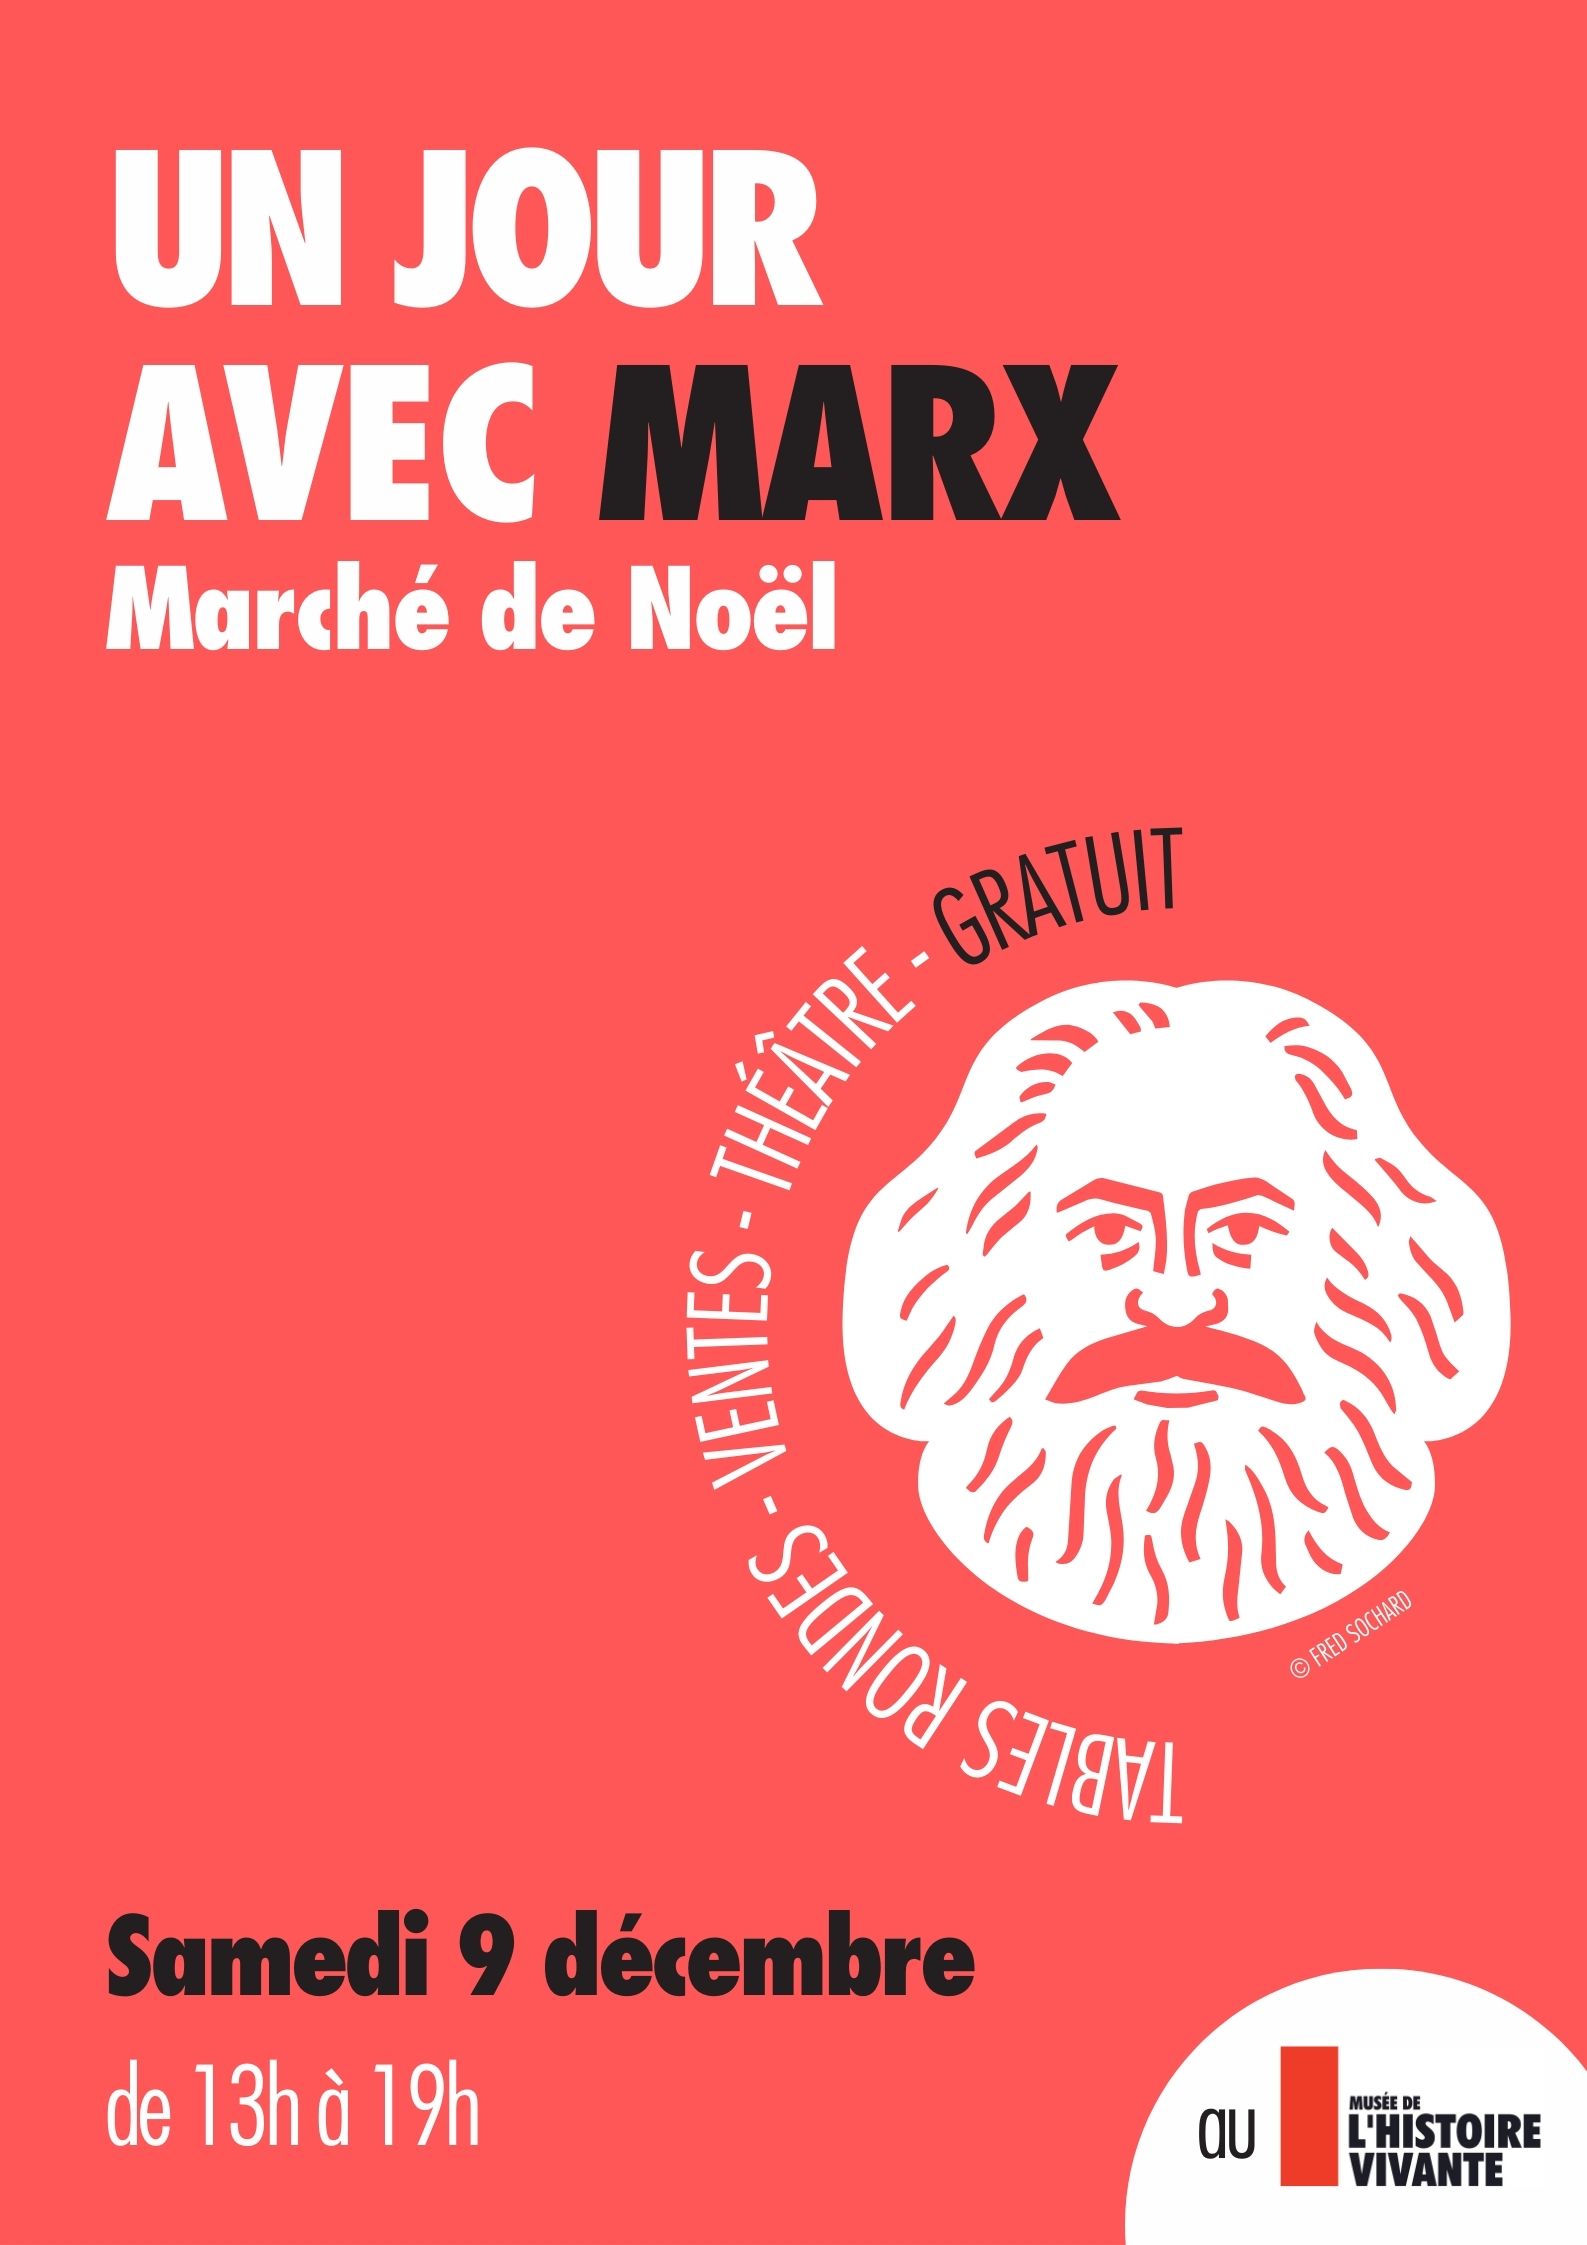 Marché de Noël au Musée de l’histoire vivante:  Une journée avec Marx